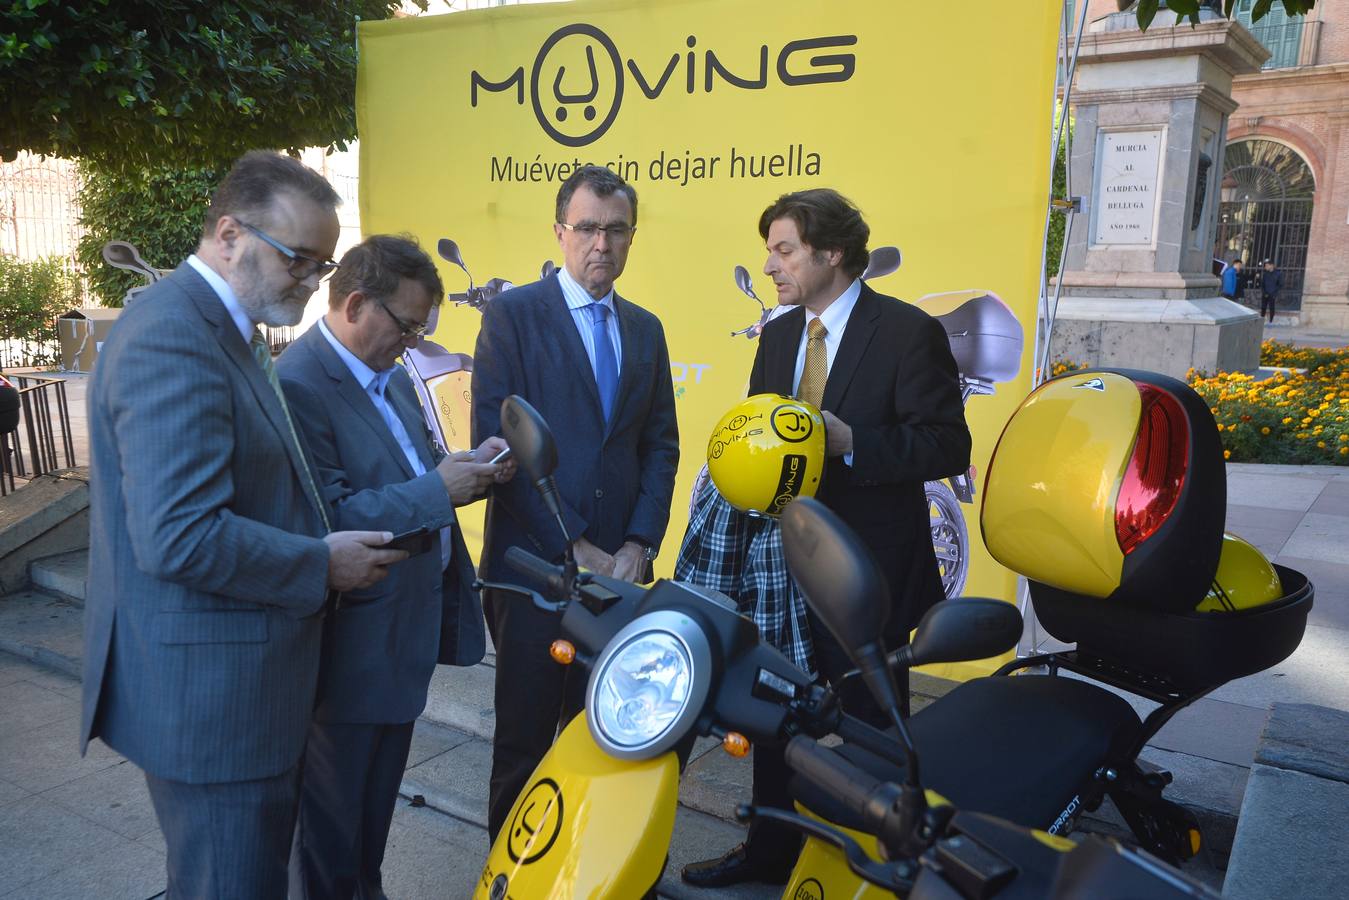 Las motos eléctricas de alquiler por minutos ya están en Murcia. Son fácilmente distinguibles por su color amarillo y, en poco tiempo, se verán muchas por la ciudad